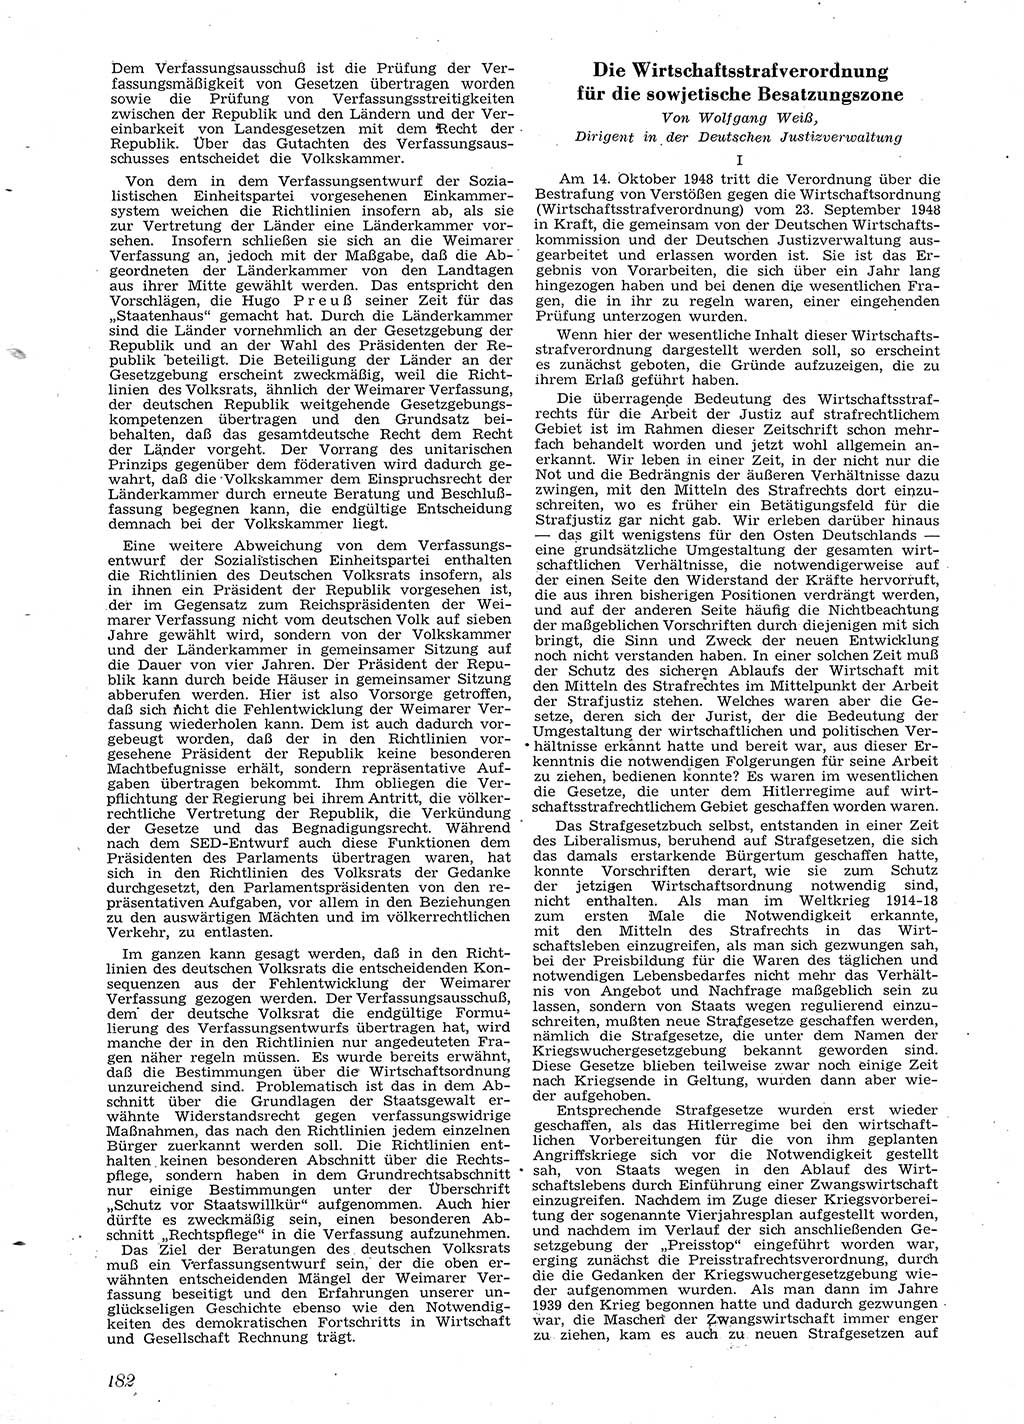 Neue Justiz (NJ), Zeitschrift für Recht und Rechtswissenschaft [Sowjetische Besatzungszone (SBZ) Deutschland], 2. Jahrgang 1948, Seite 182 (NJ SBZ Dtl. 1948, S. 182)